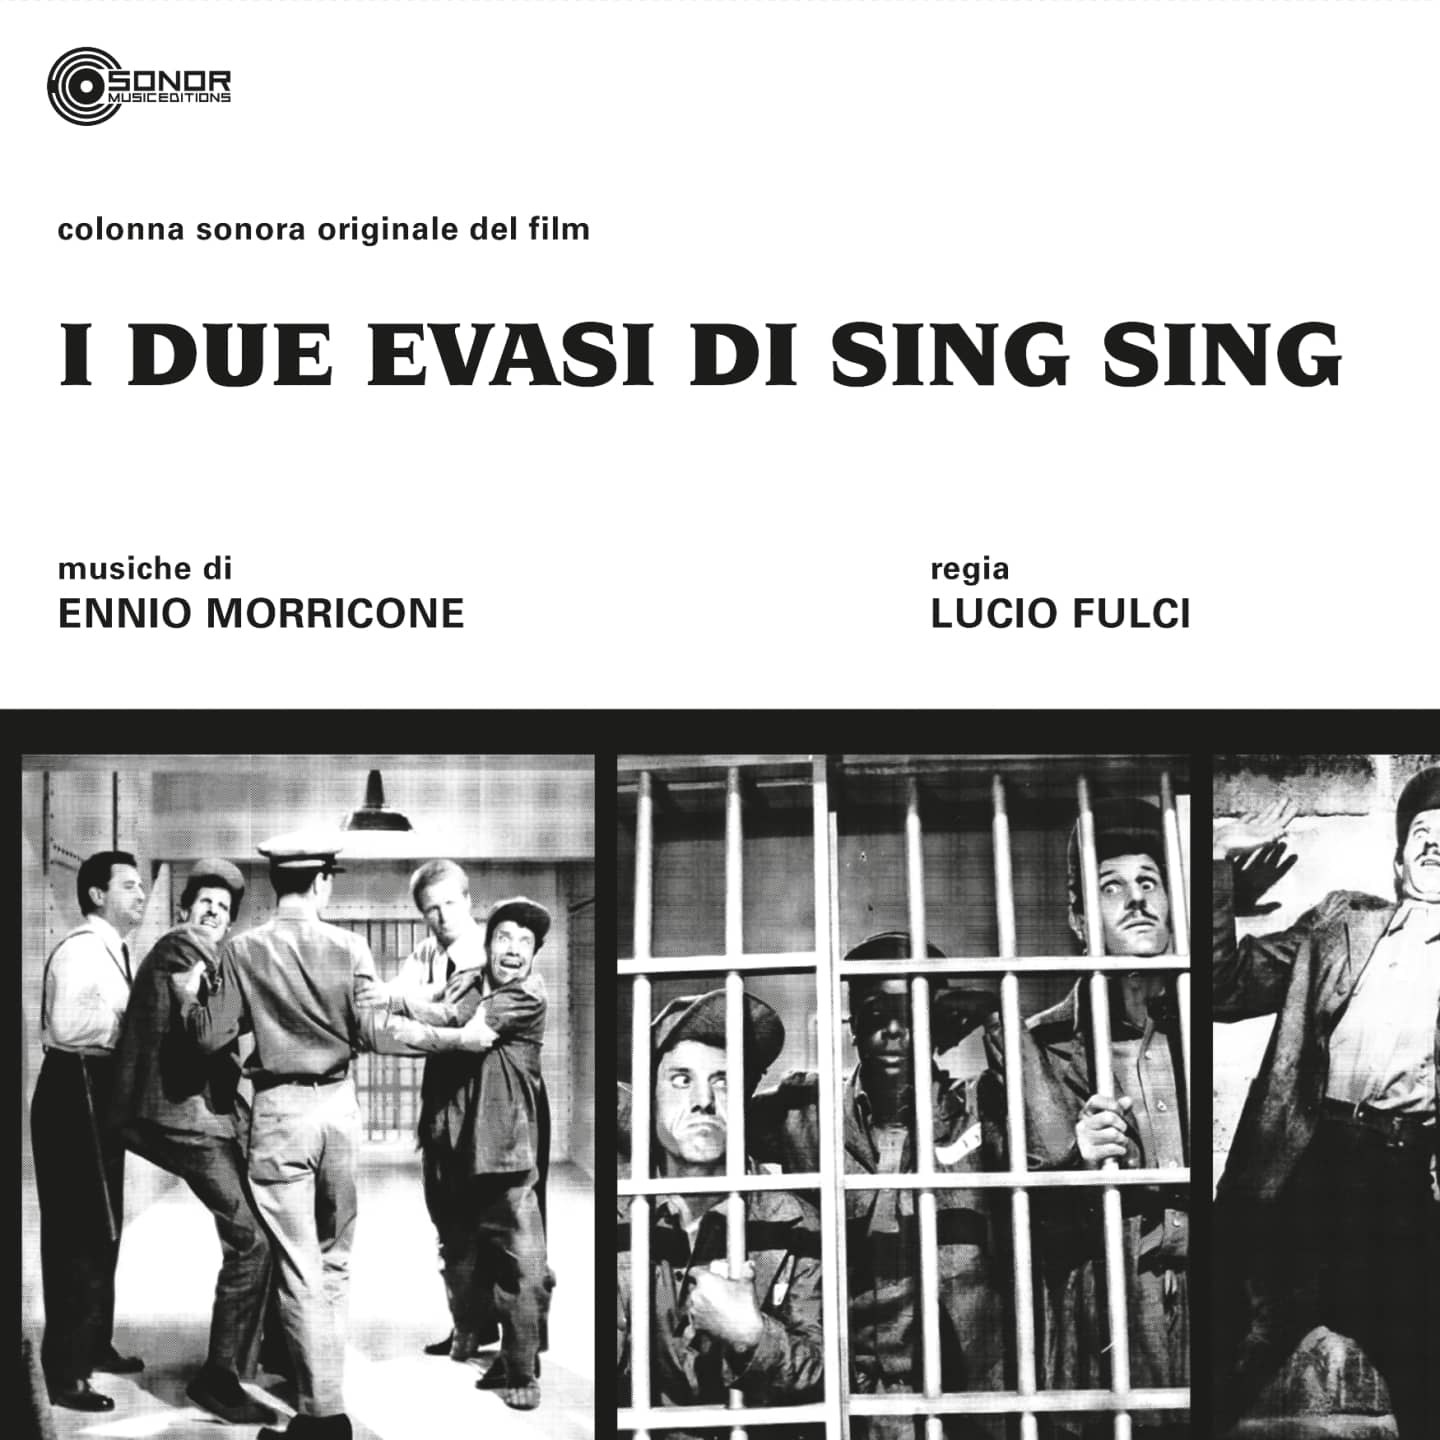 I DUE EVASI DI SING SING OST